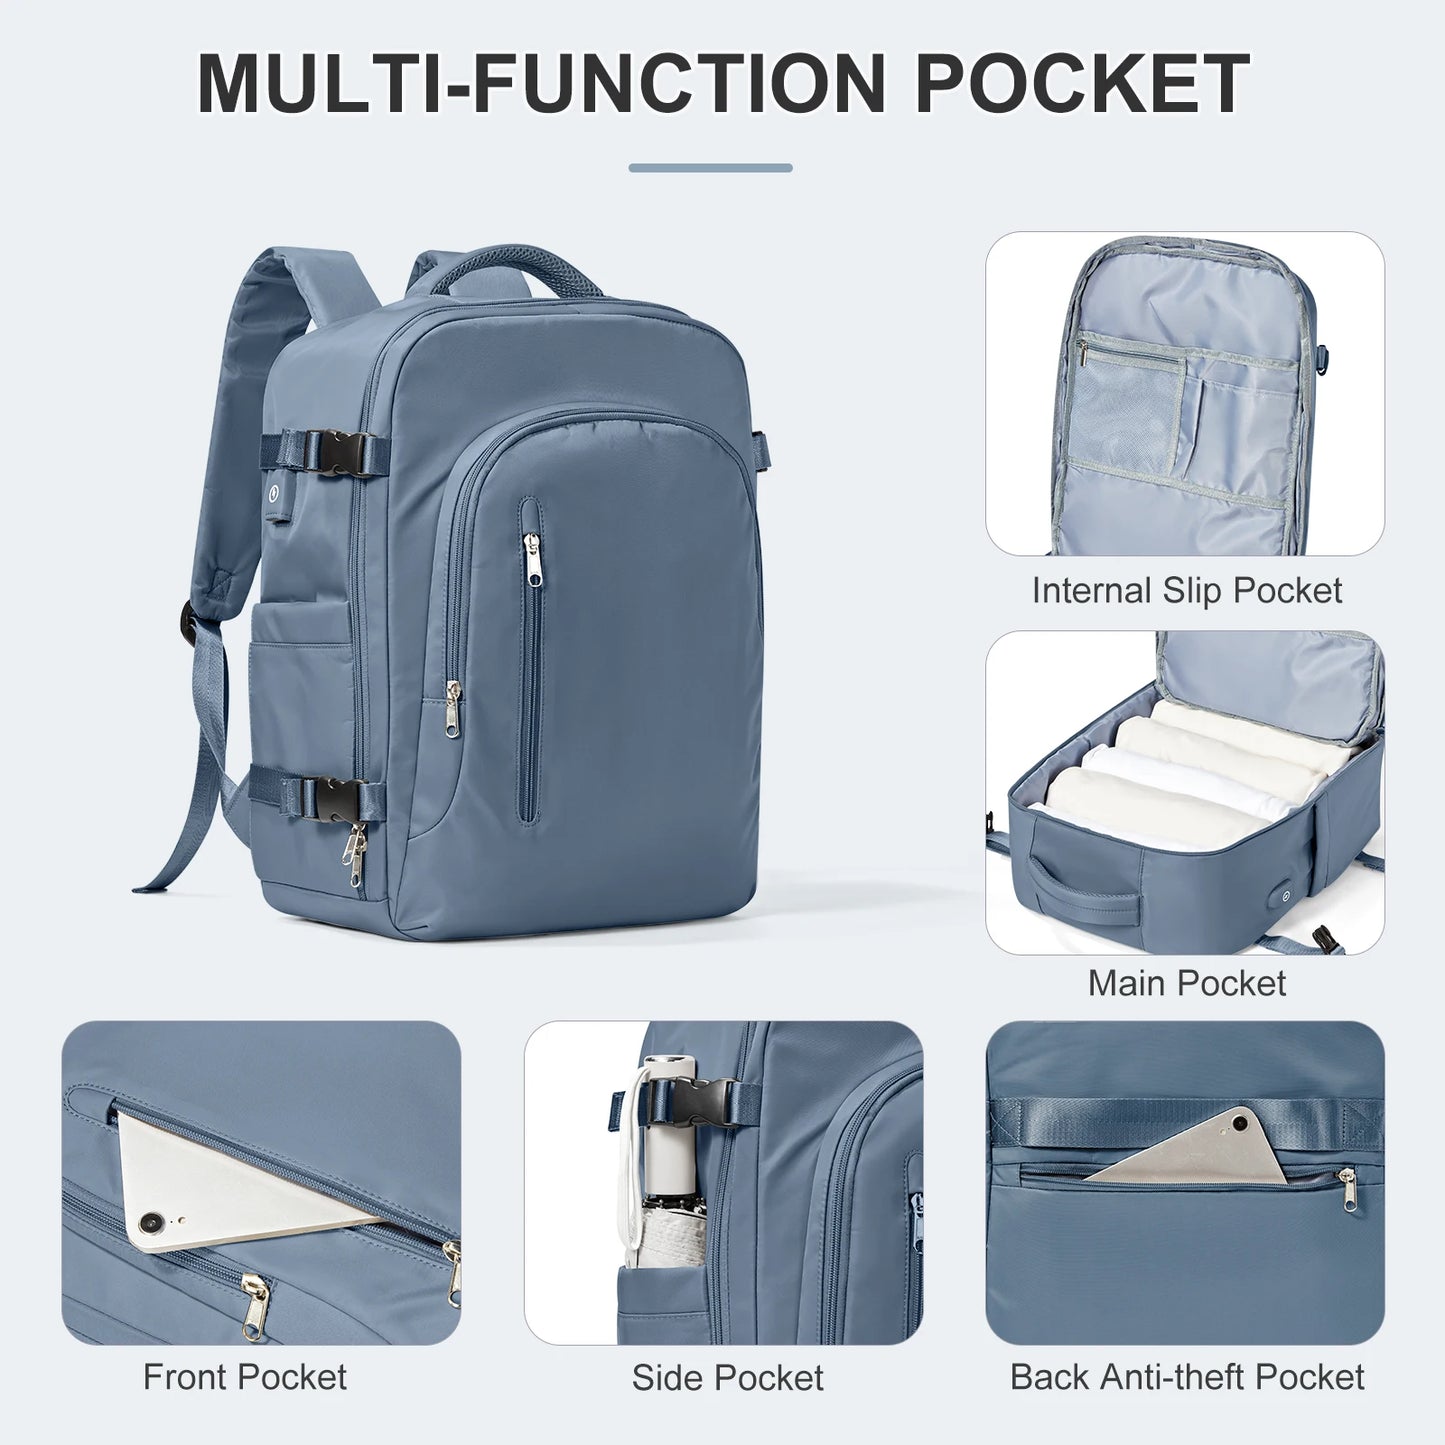 Sac d'ordinateur portable sac à dos de voyage pour les femmes de grande capacité EasyJet Carry-ons 45x36x20 sac à dos Ryanair 40x20x25, sac à dos pour hommes